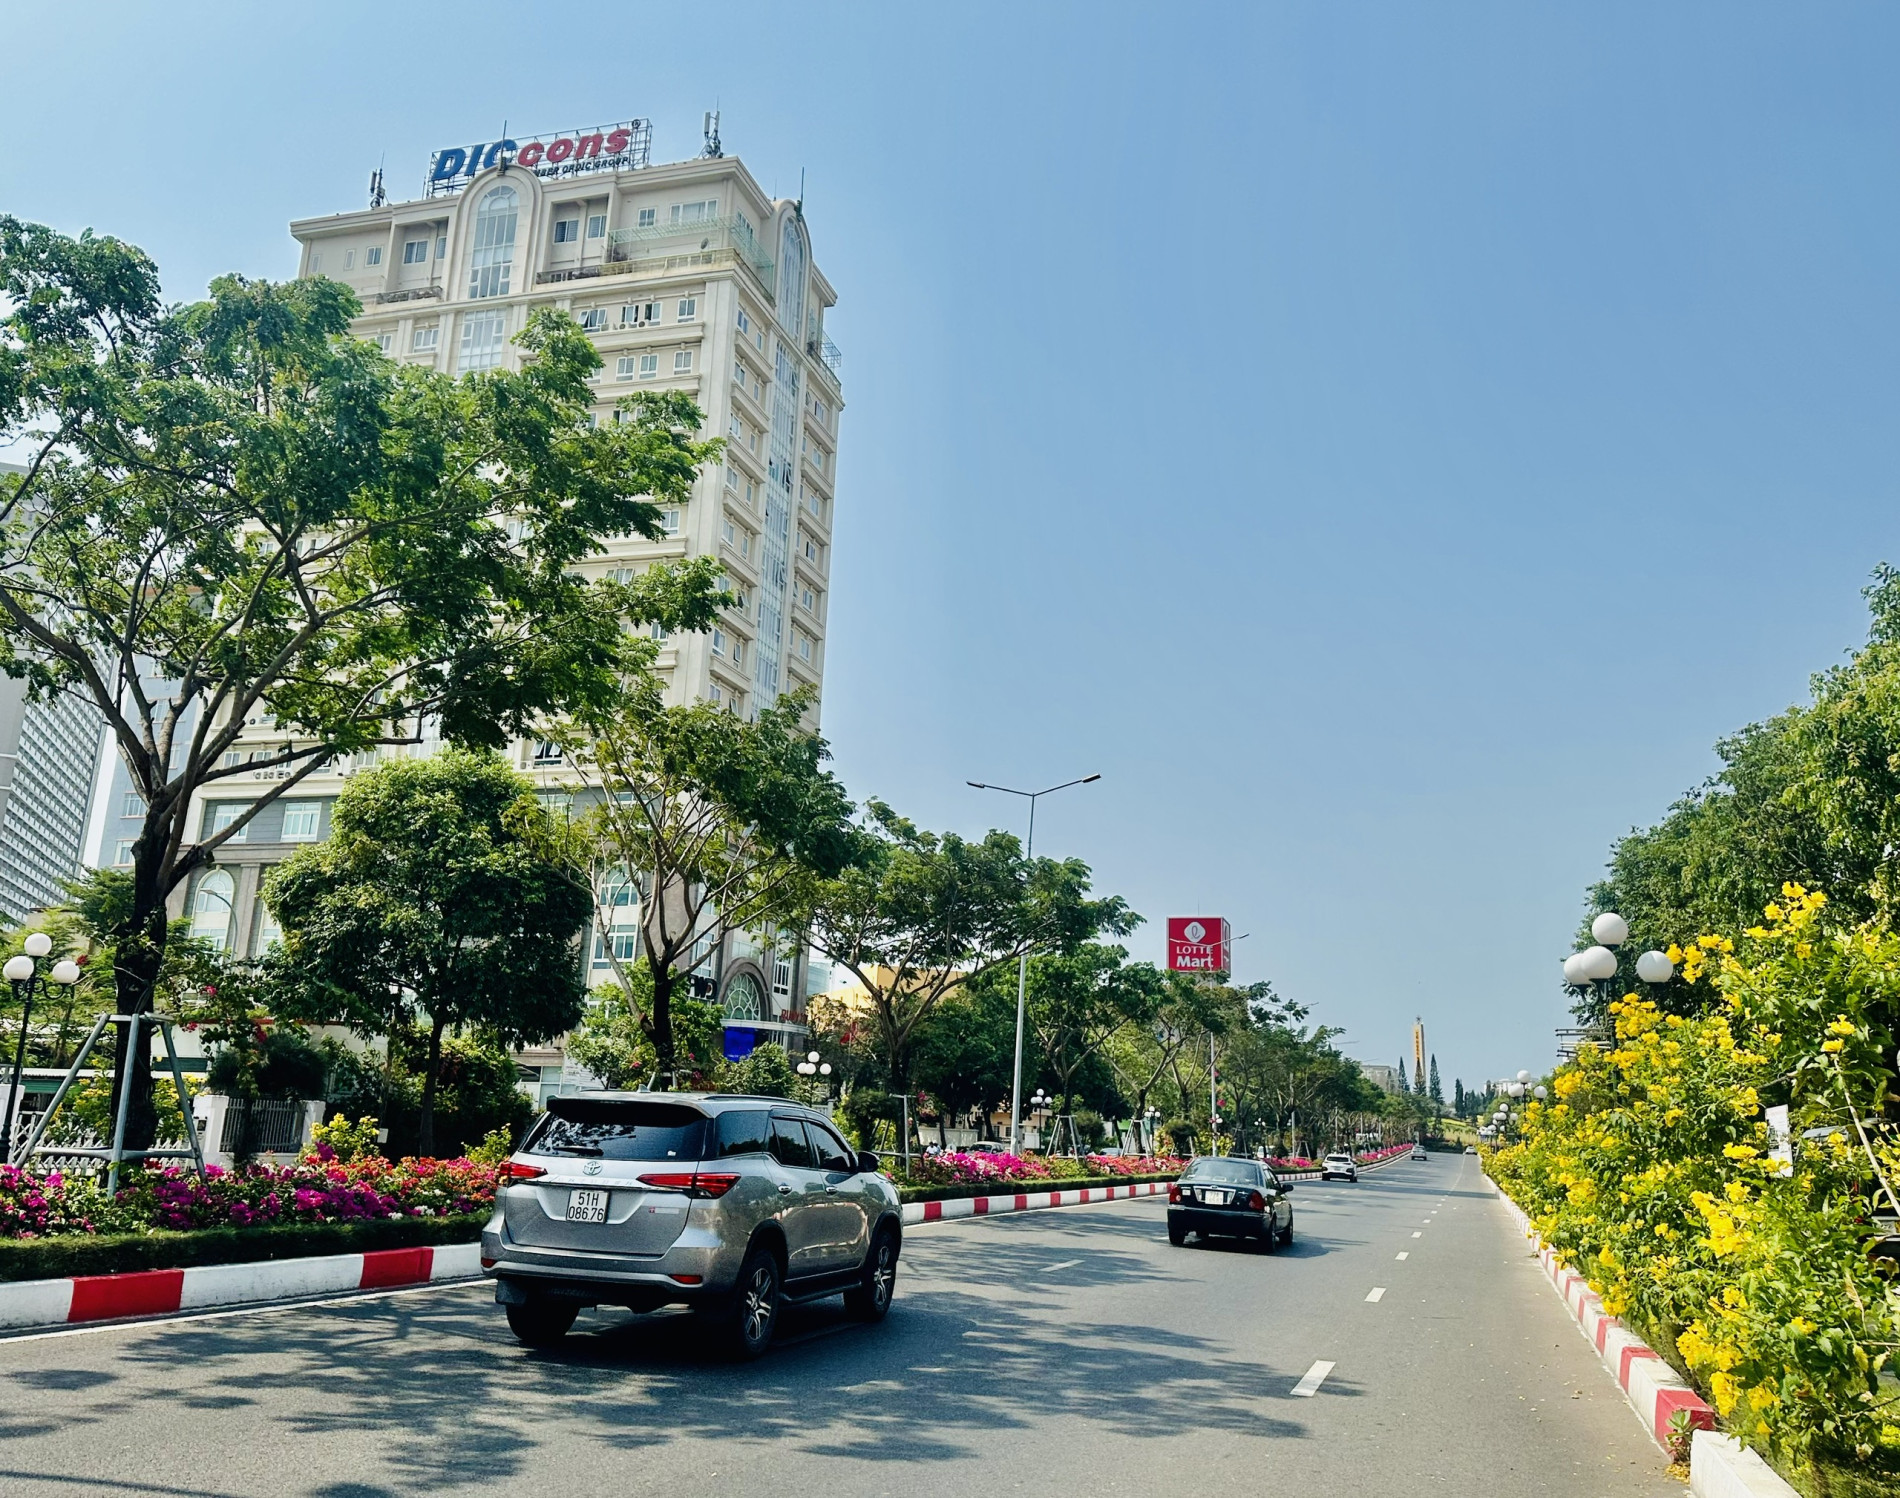 UBND tỉnh đã ban hành kế hoạch triển khai thực hiện đề án “Phát triển các đô thị Việt Nam ứng phó với BĐKH giai đoạn 2021-2030” trên địa bàn tỉnh Bà Rịa-Vũng Tàu với 7 nhóm giải pháp. Trong ảnh: Một góc đô thị với nhiều cây xanh trên đường 3/2, TP. Vũng Tàu.